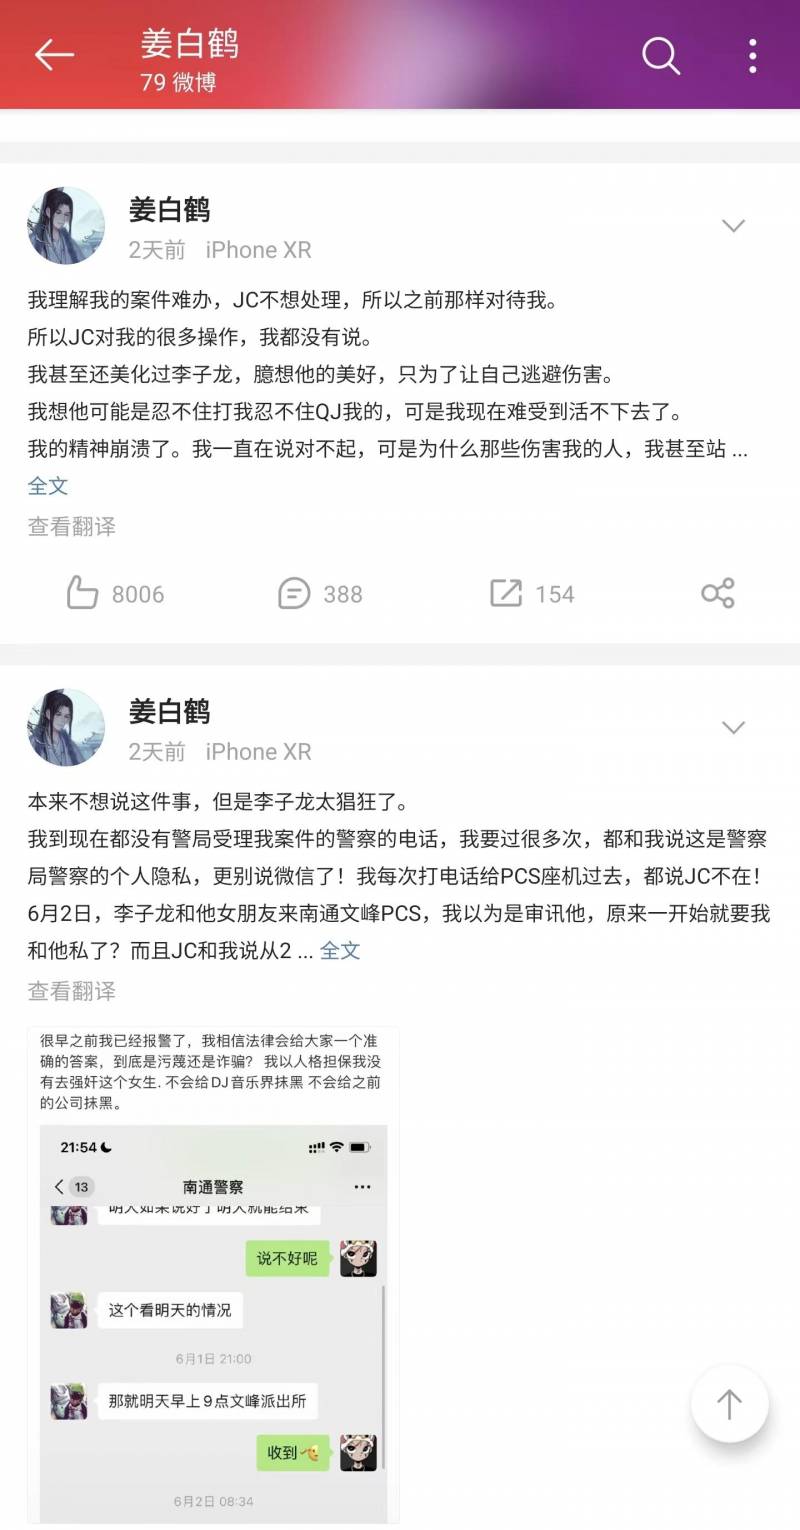 姜白鹤的微博引发热议，勇敢揭露性侵经历，医生诊断仍为处女，坚称自己被侵犯权益不容忽视。